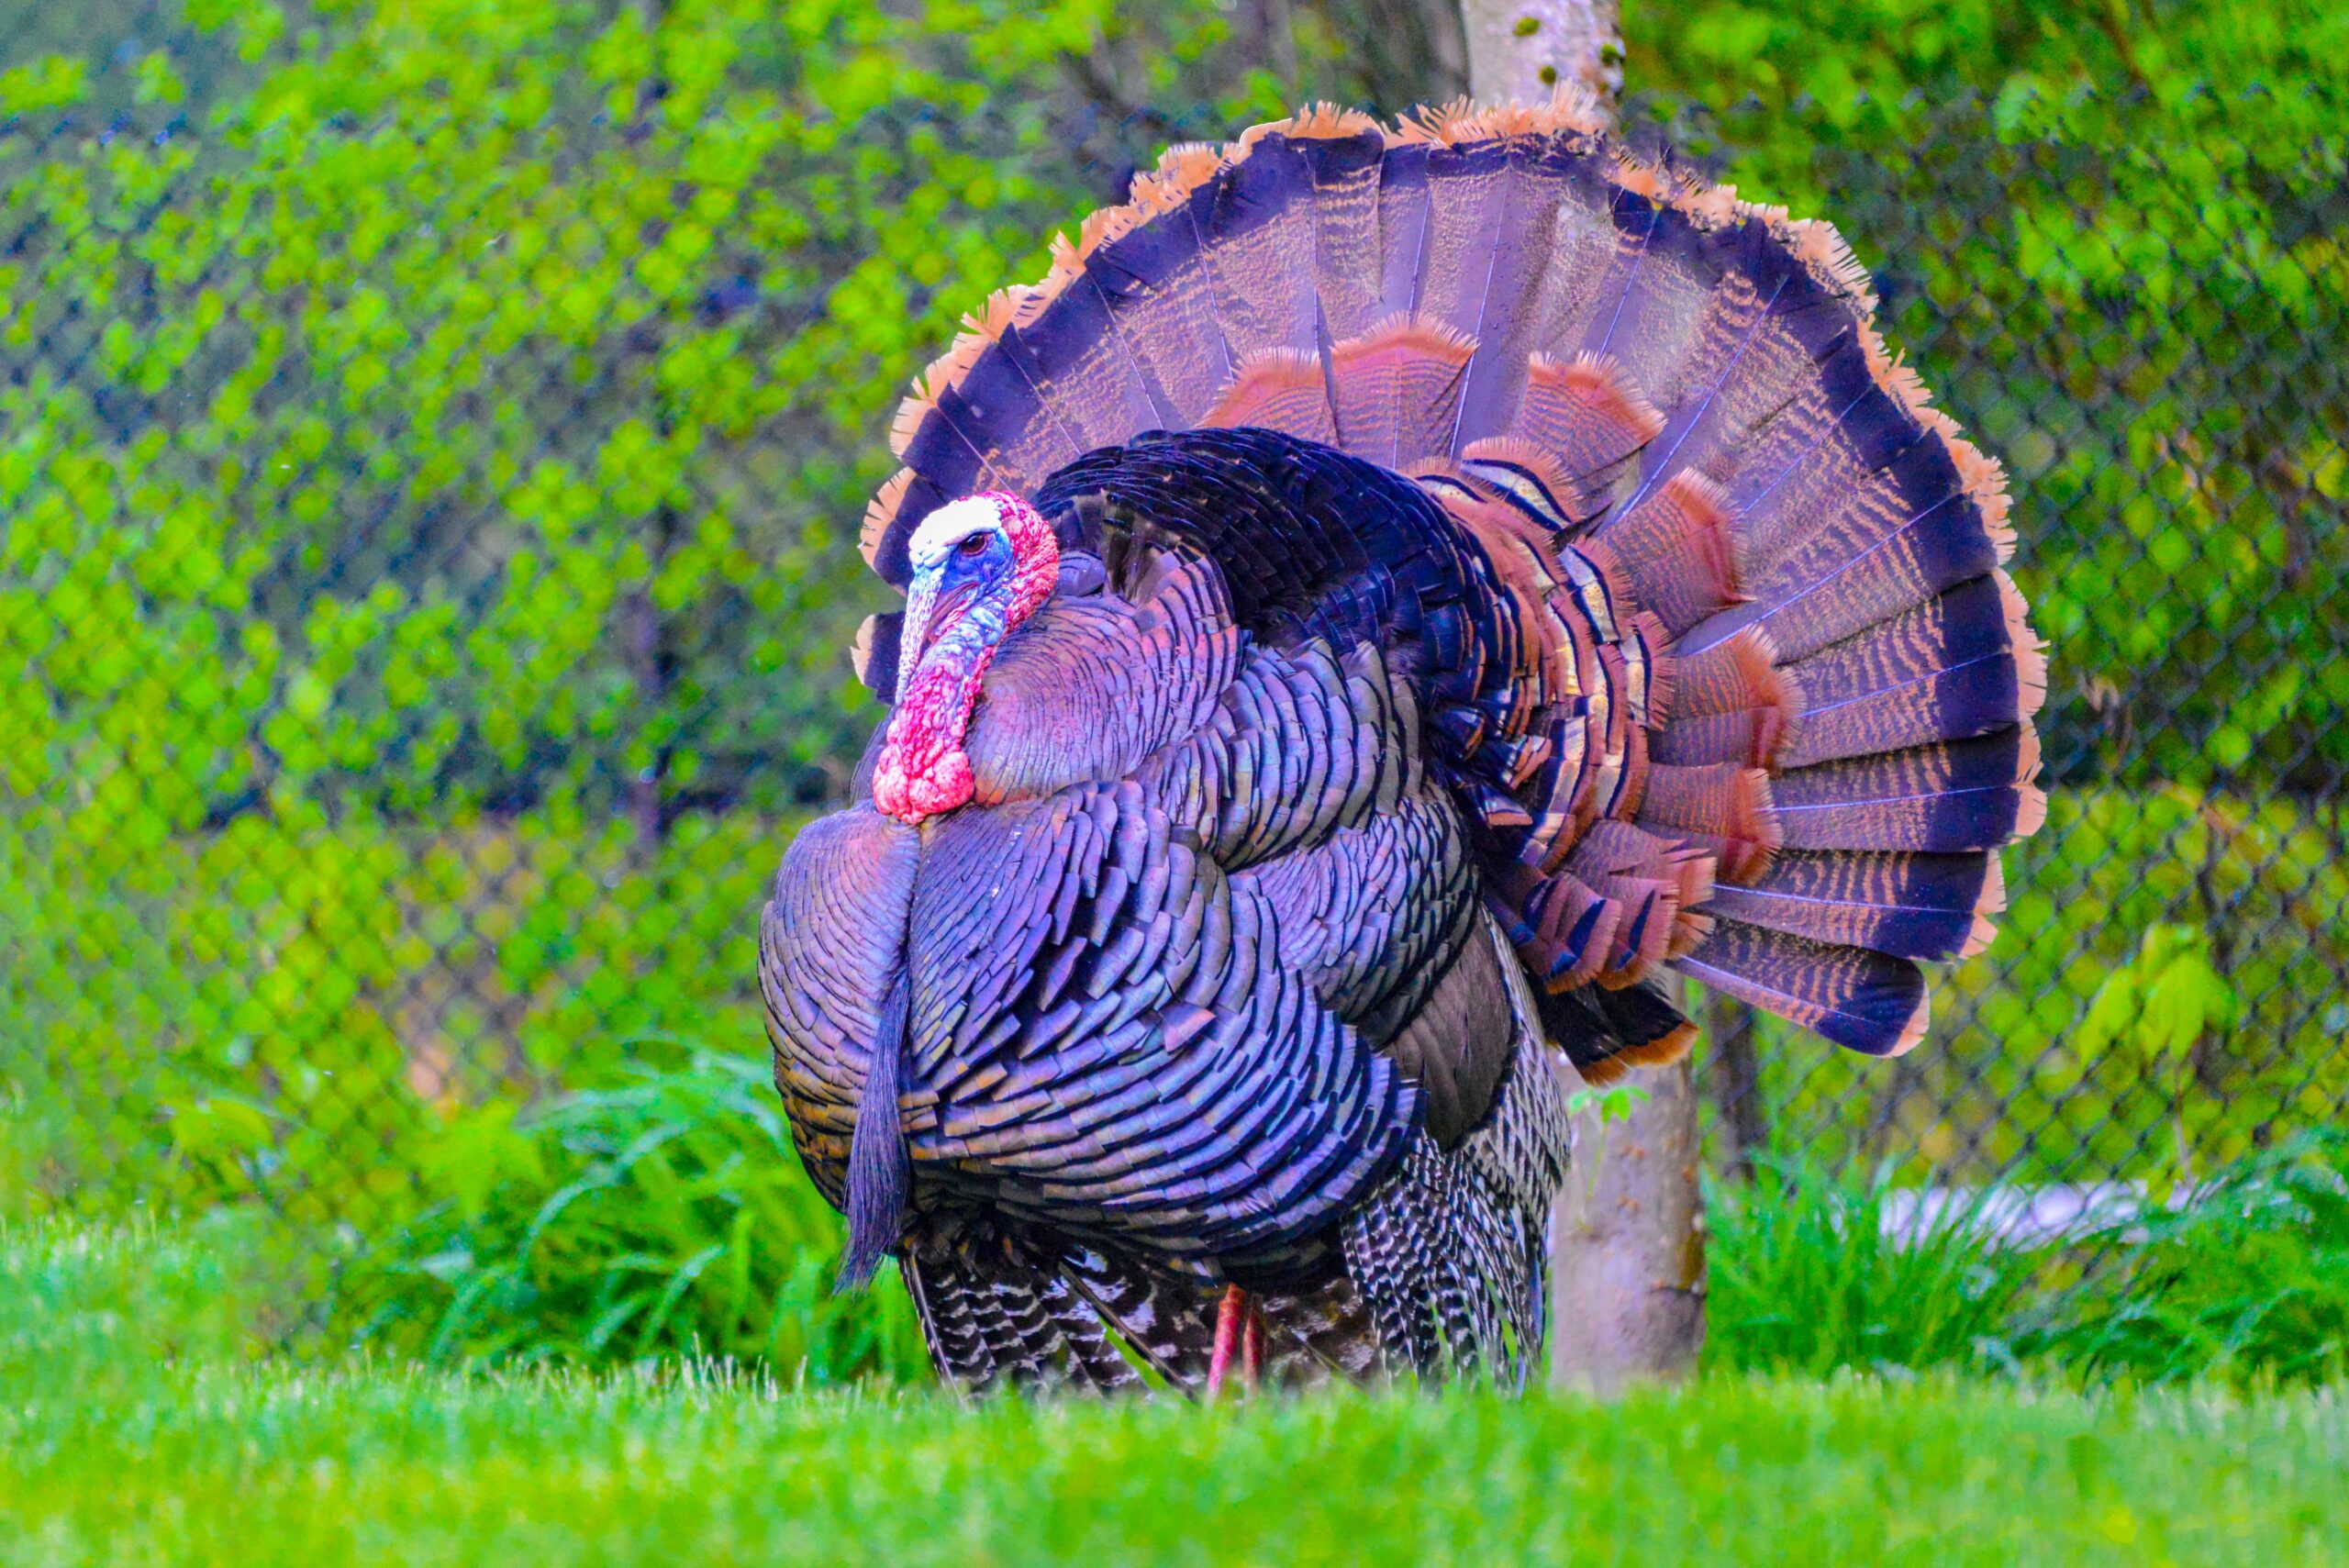 Turkey in a field